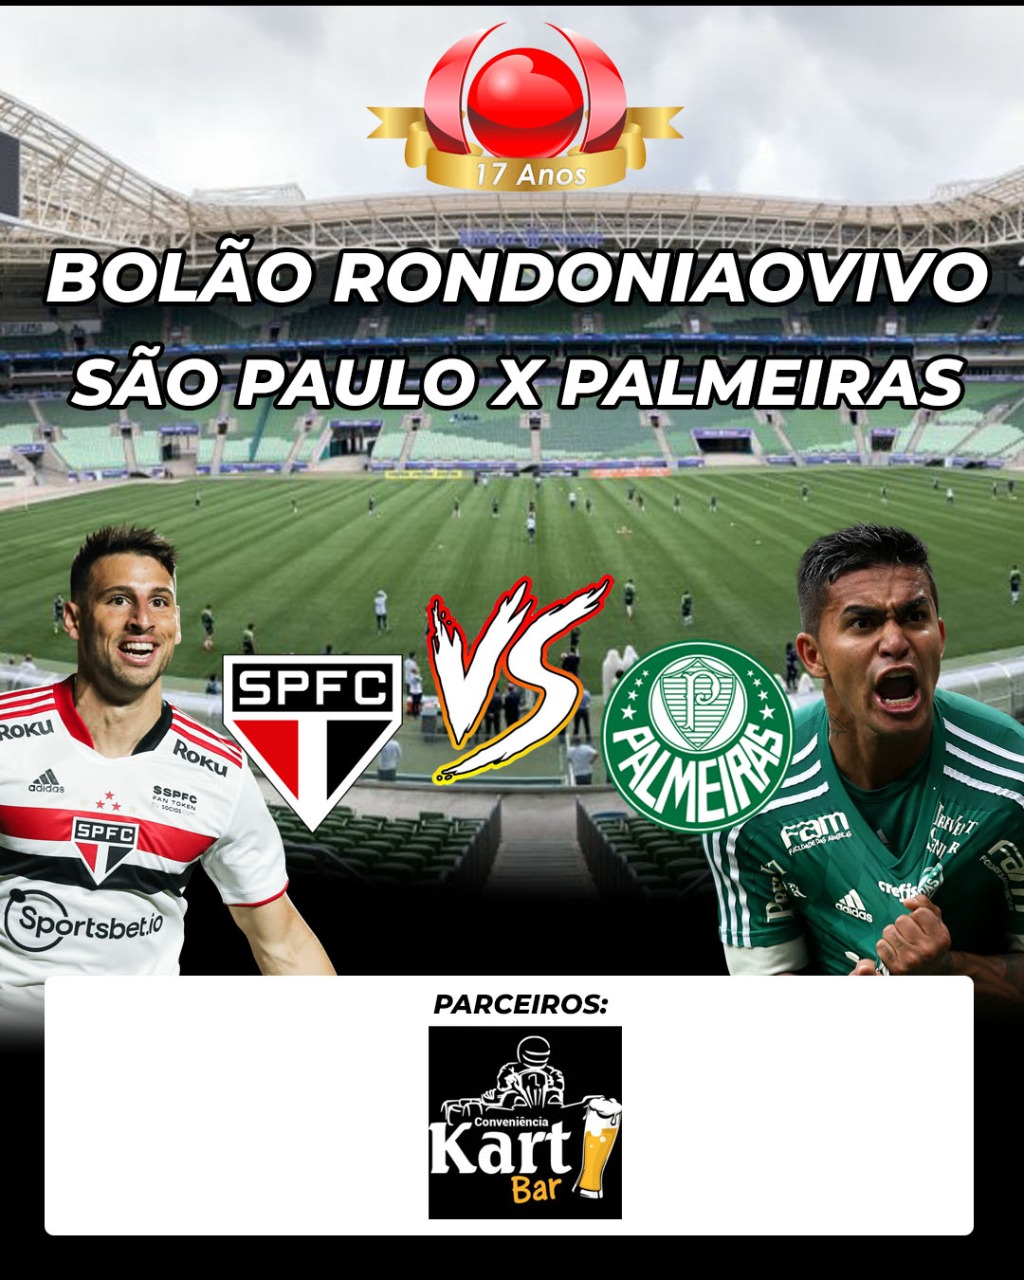 Palmeiras x São Paulo - Jogo Completo 